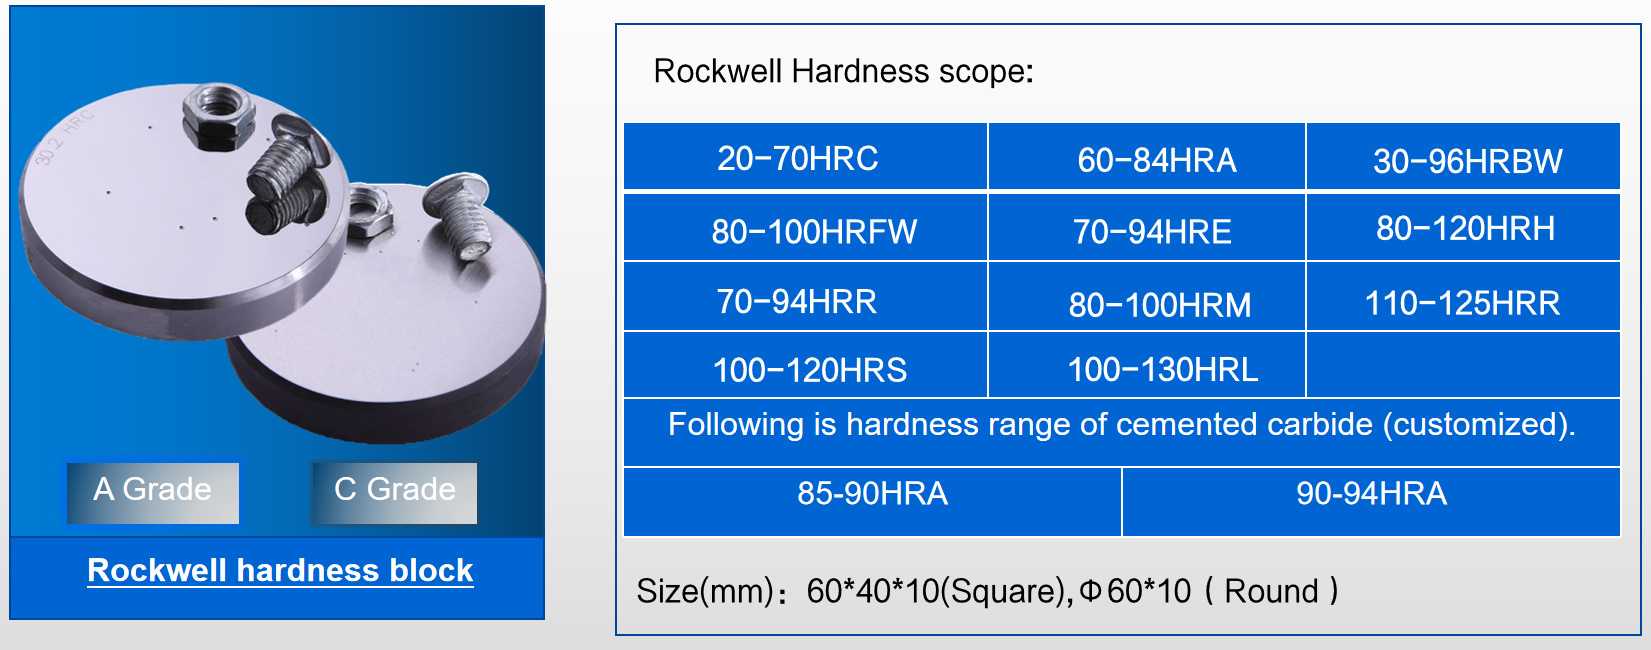 ʻO Rockwell Hardness scope